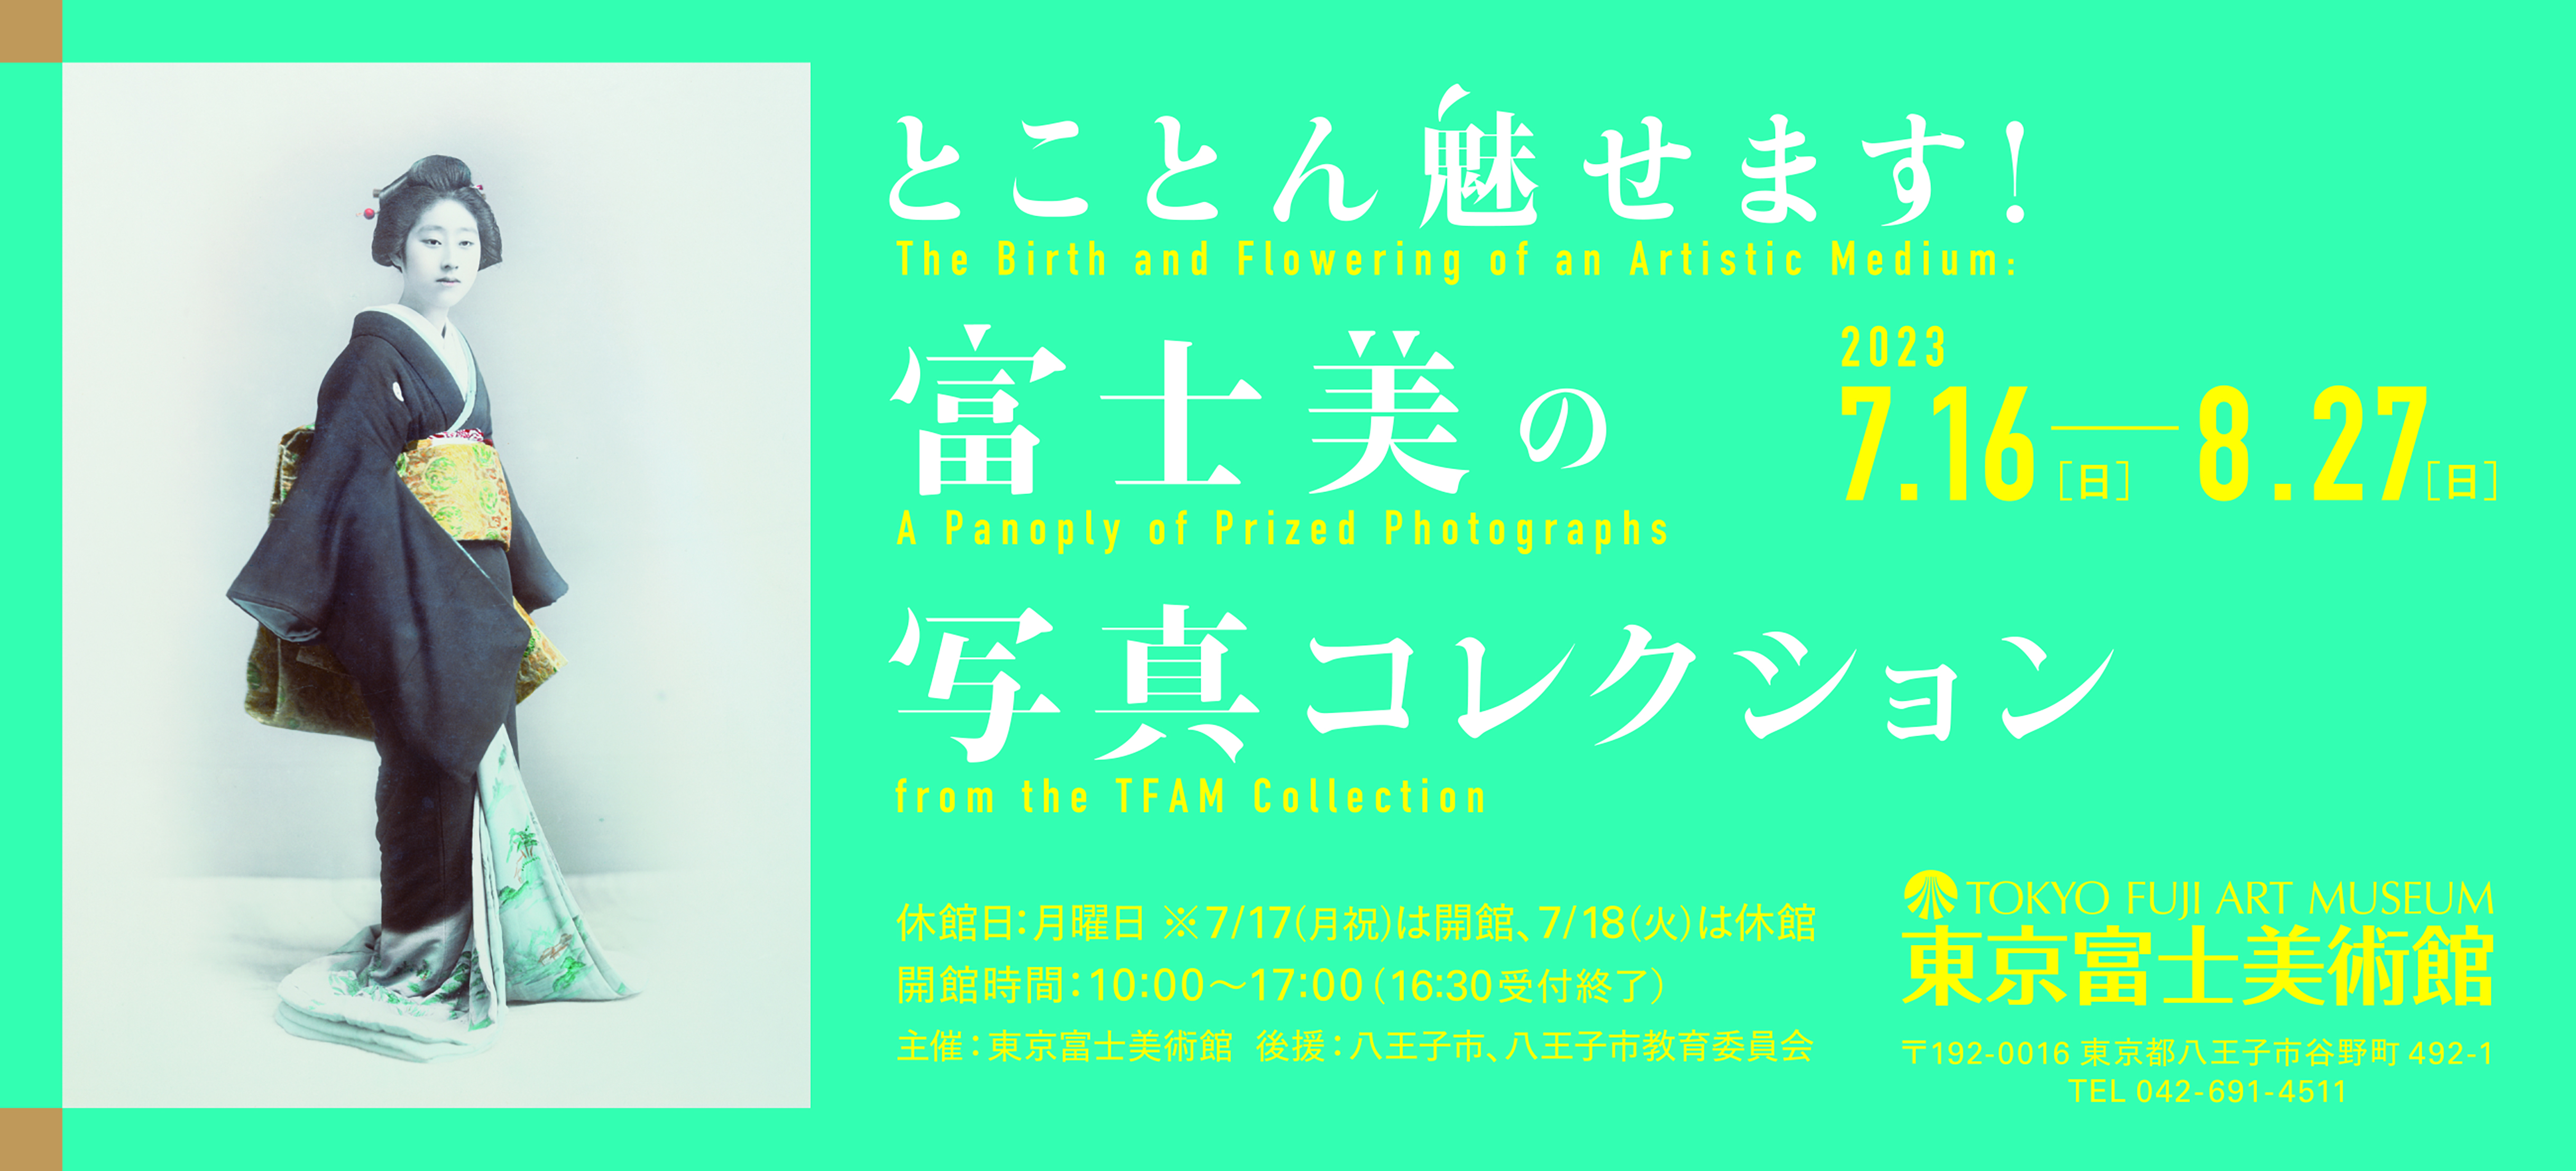 東京富士美術館 世界遺産 大シルクロード展 招待券 チケット ２名分 通販